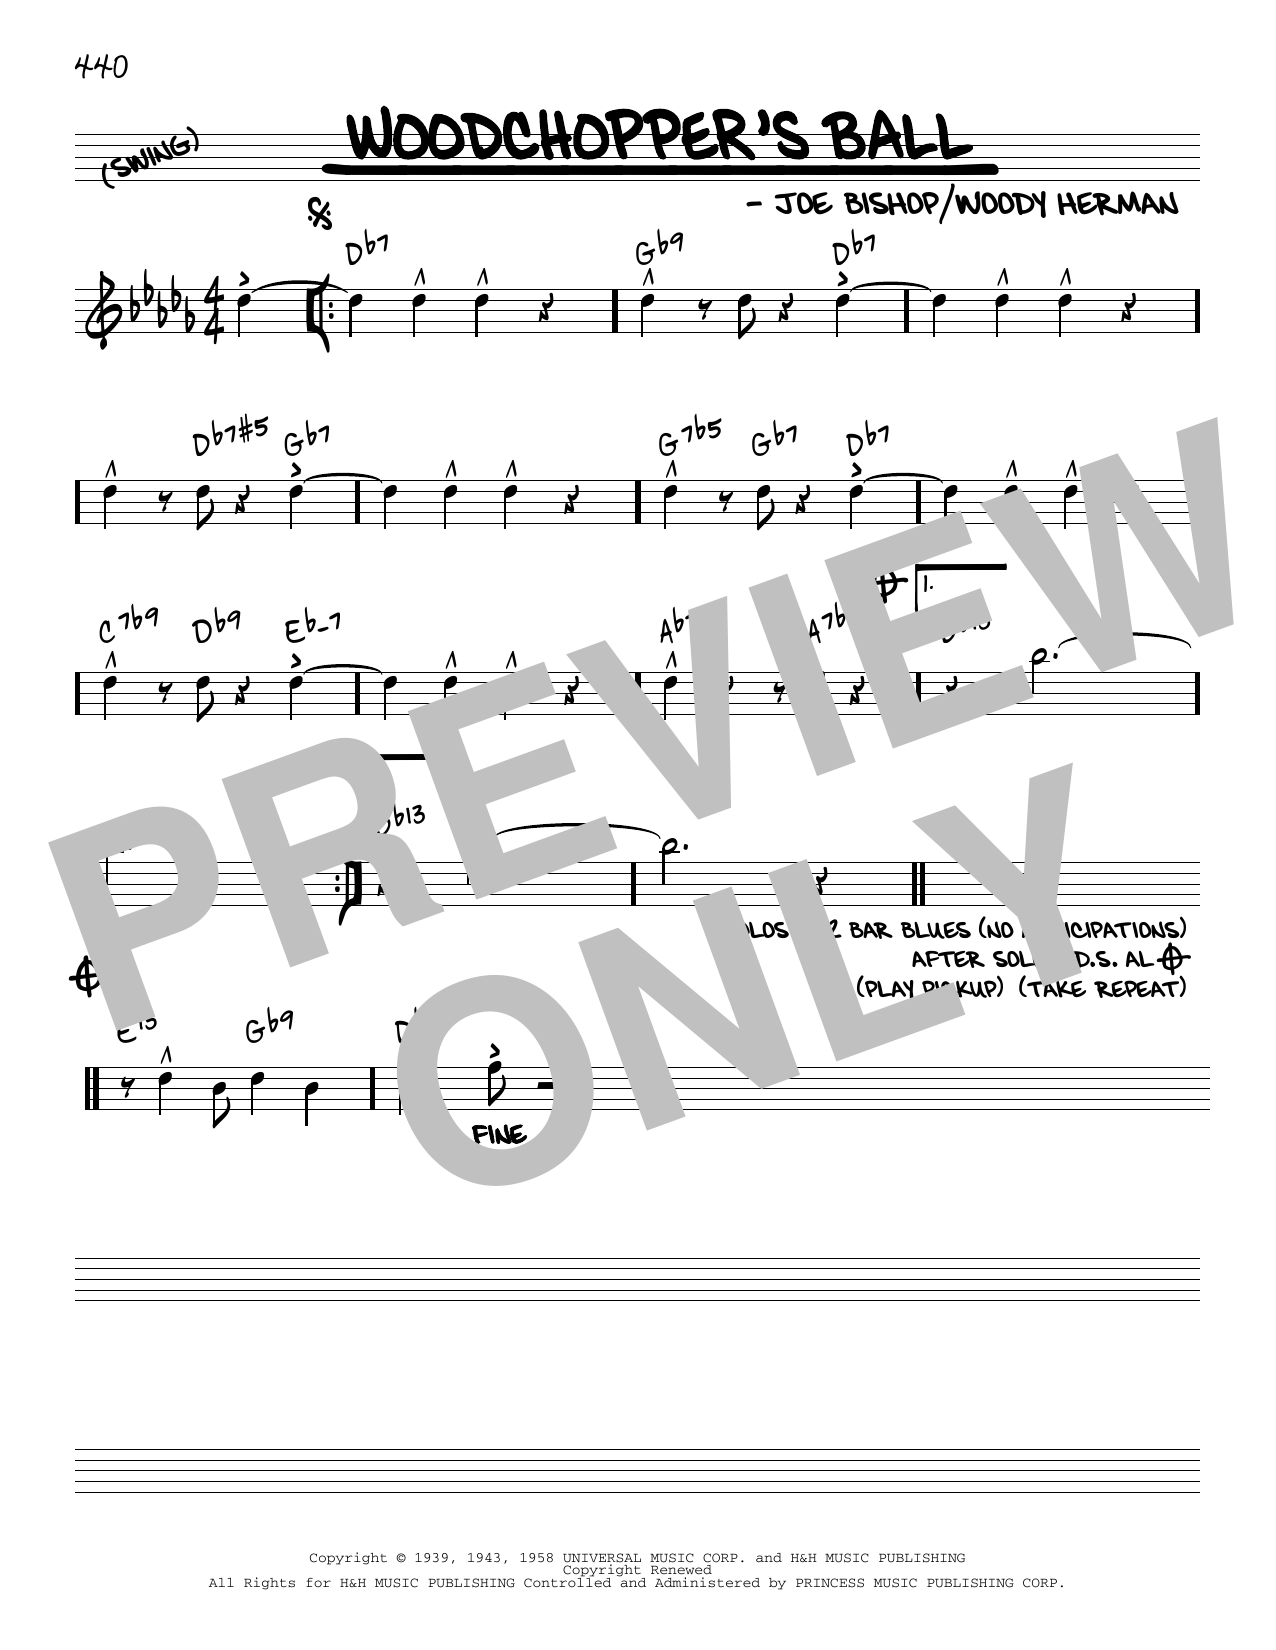 Download Woody Herman Woodchopper's Ball [Reharmonized versio Sheet Music